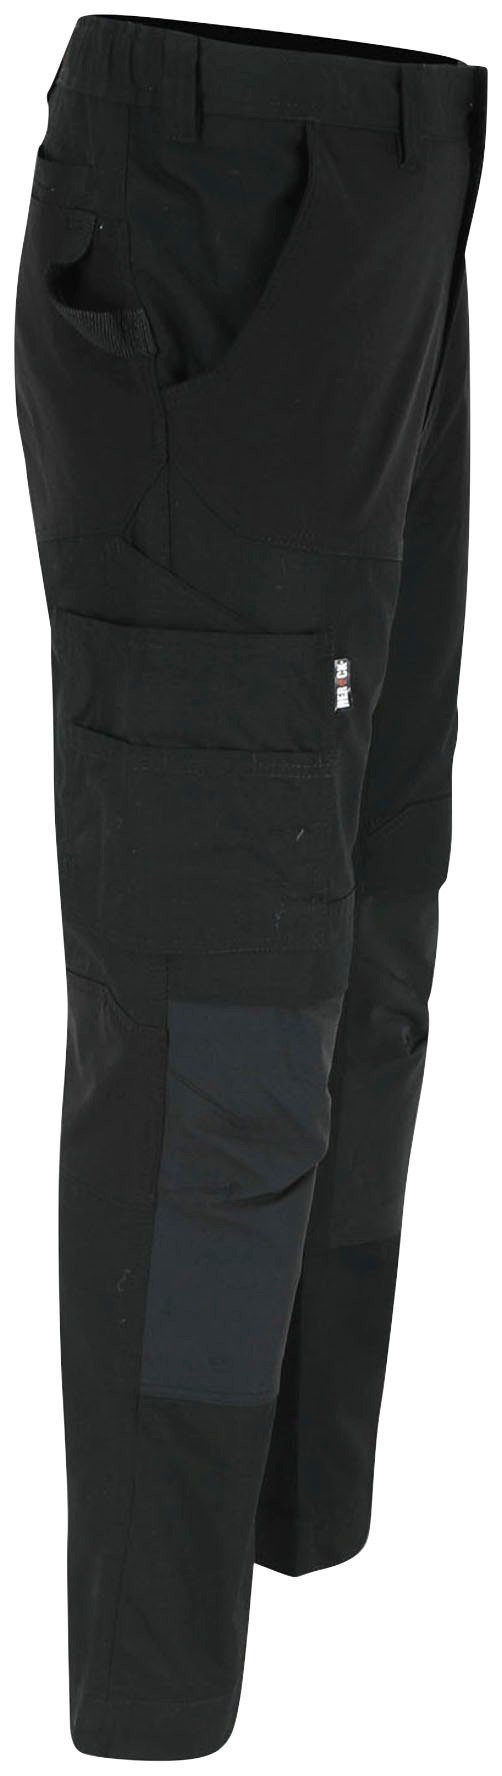 Arbeitshose Herock verdeckter verstärkte Knopf, Multi-Pocket, Hector schwarz 4-Wege-Stretch, Hoses Knietaschen